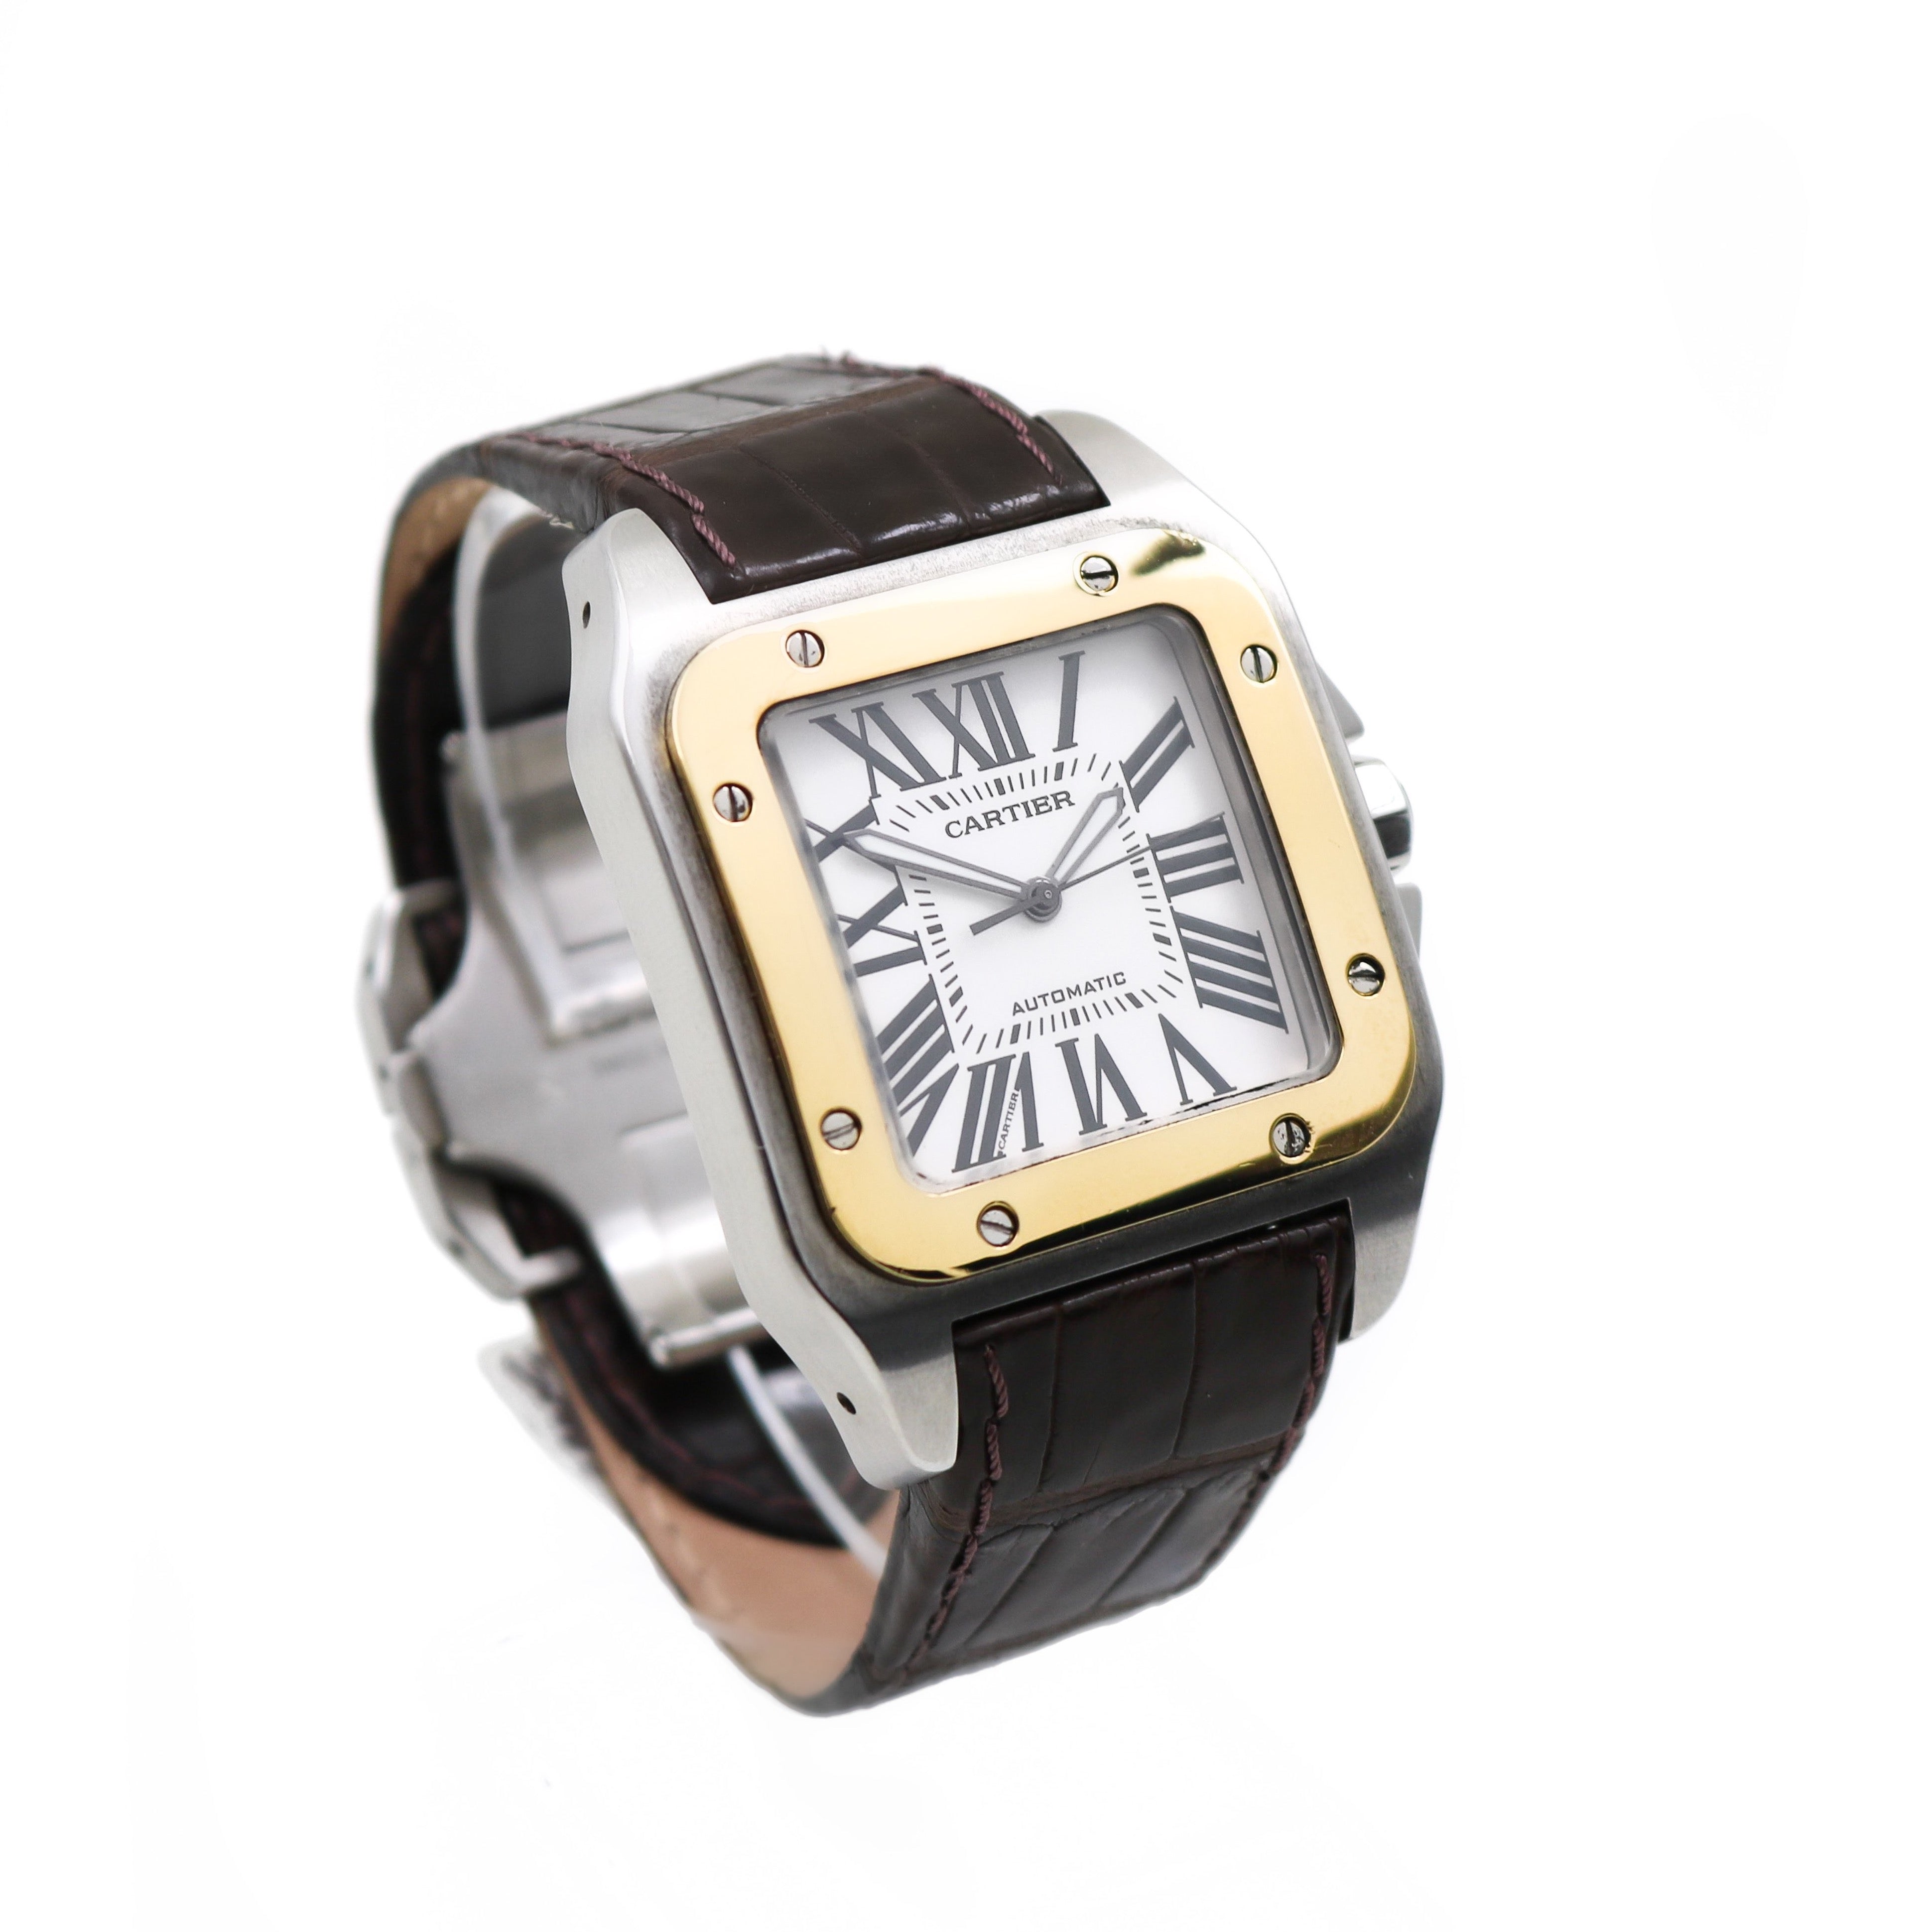 Santos-Dumont Watch - Watches of Switzerland